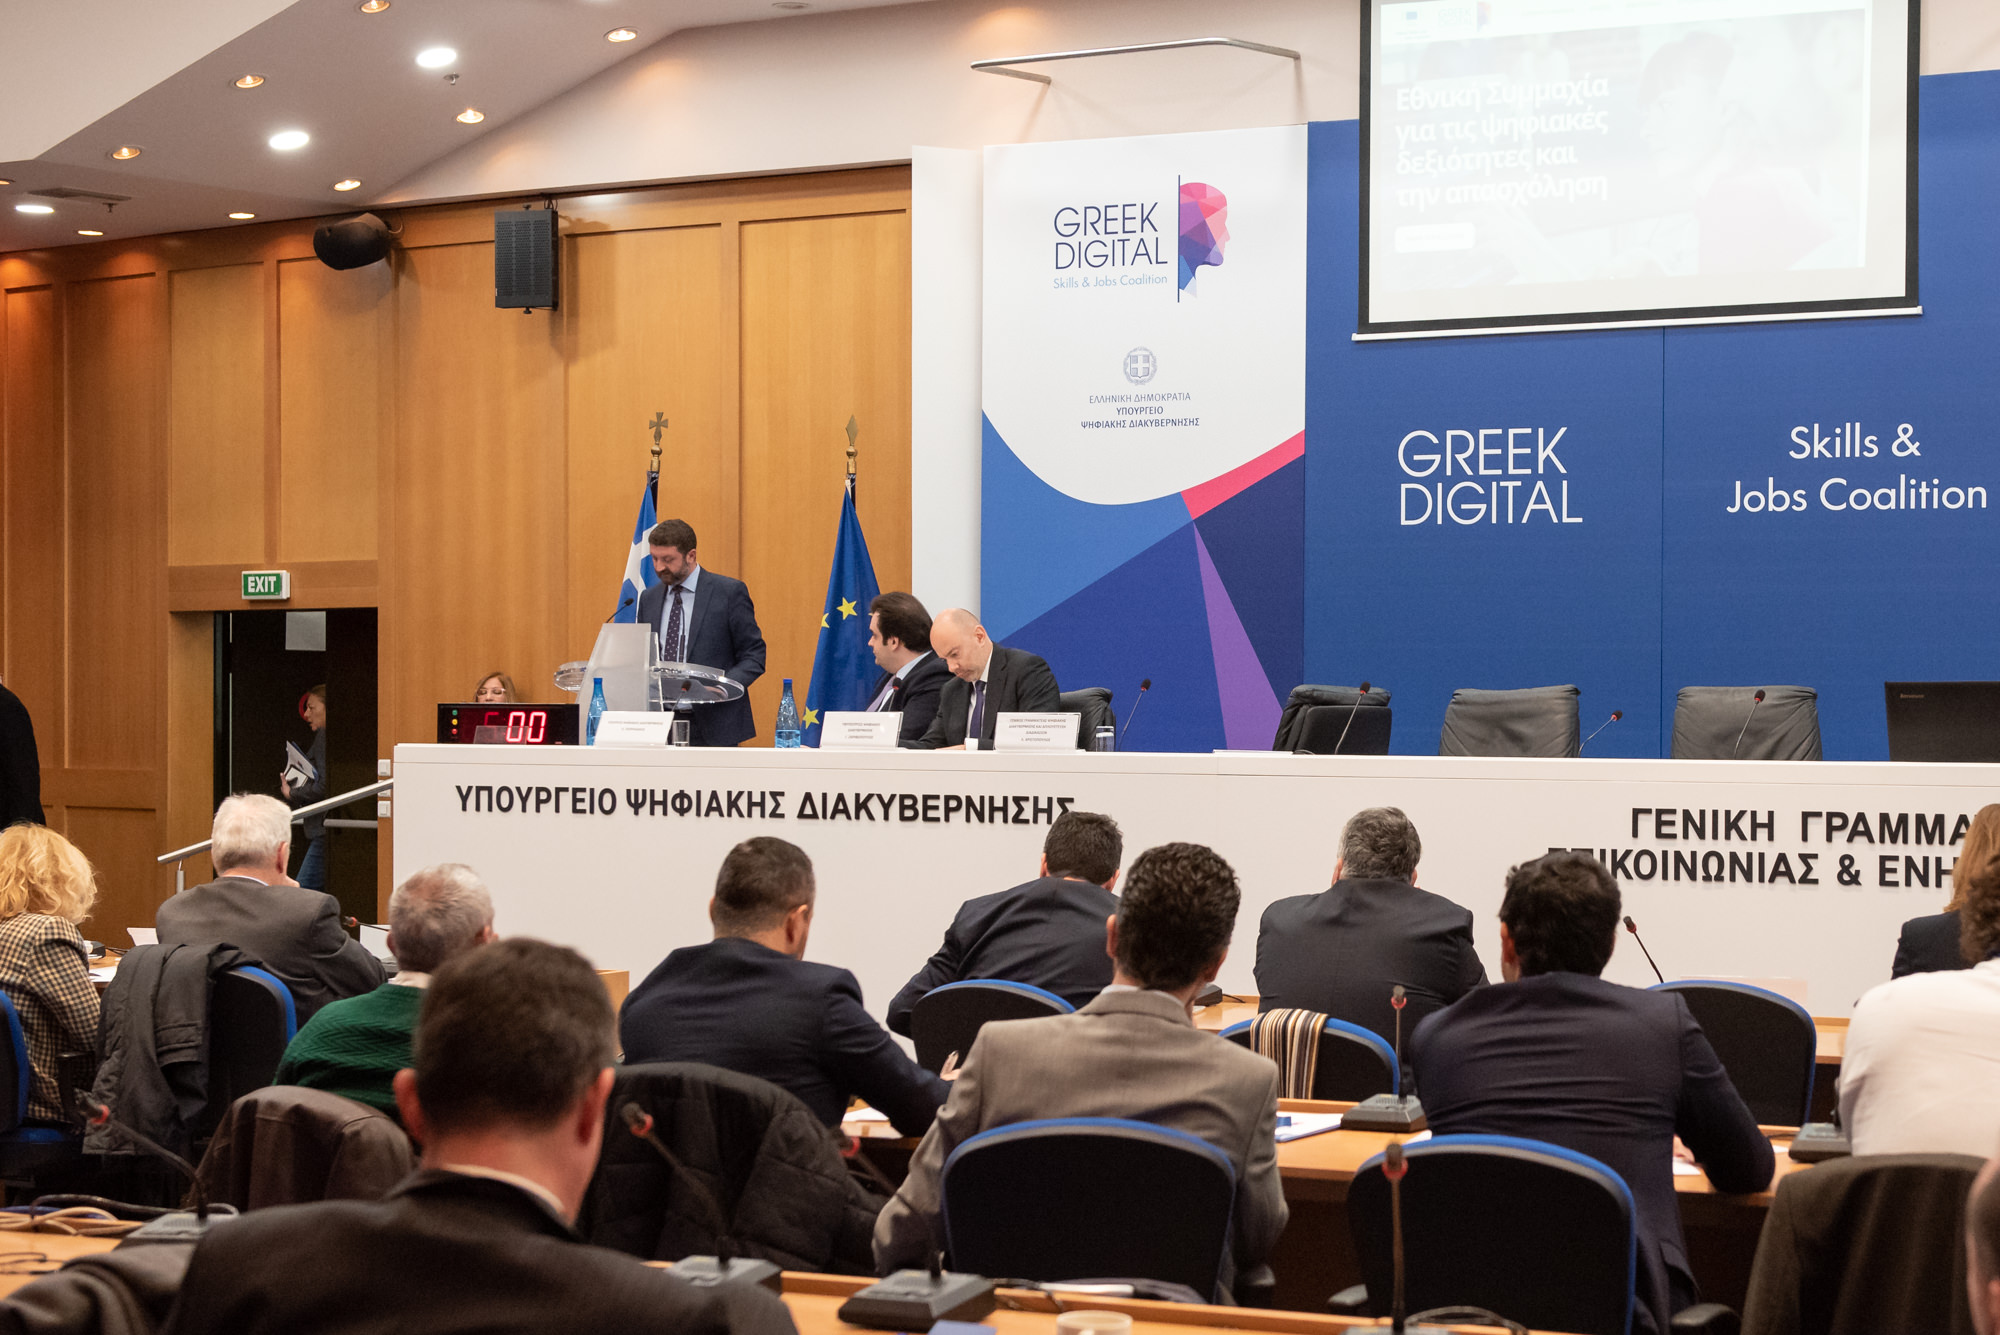 Επανέναρξη «Ελληνικής Συμμαχίας» για την αντιμετώπιση του ψηφιακού αναλφαβητισμού και την απασχόληση